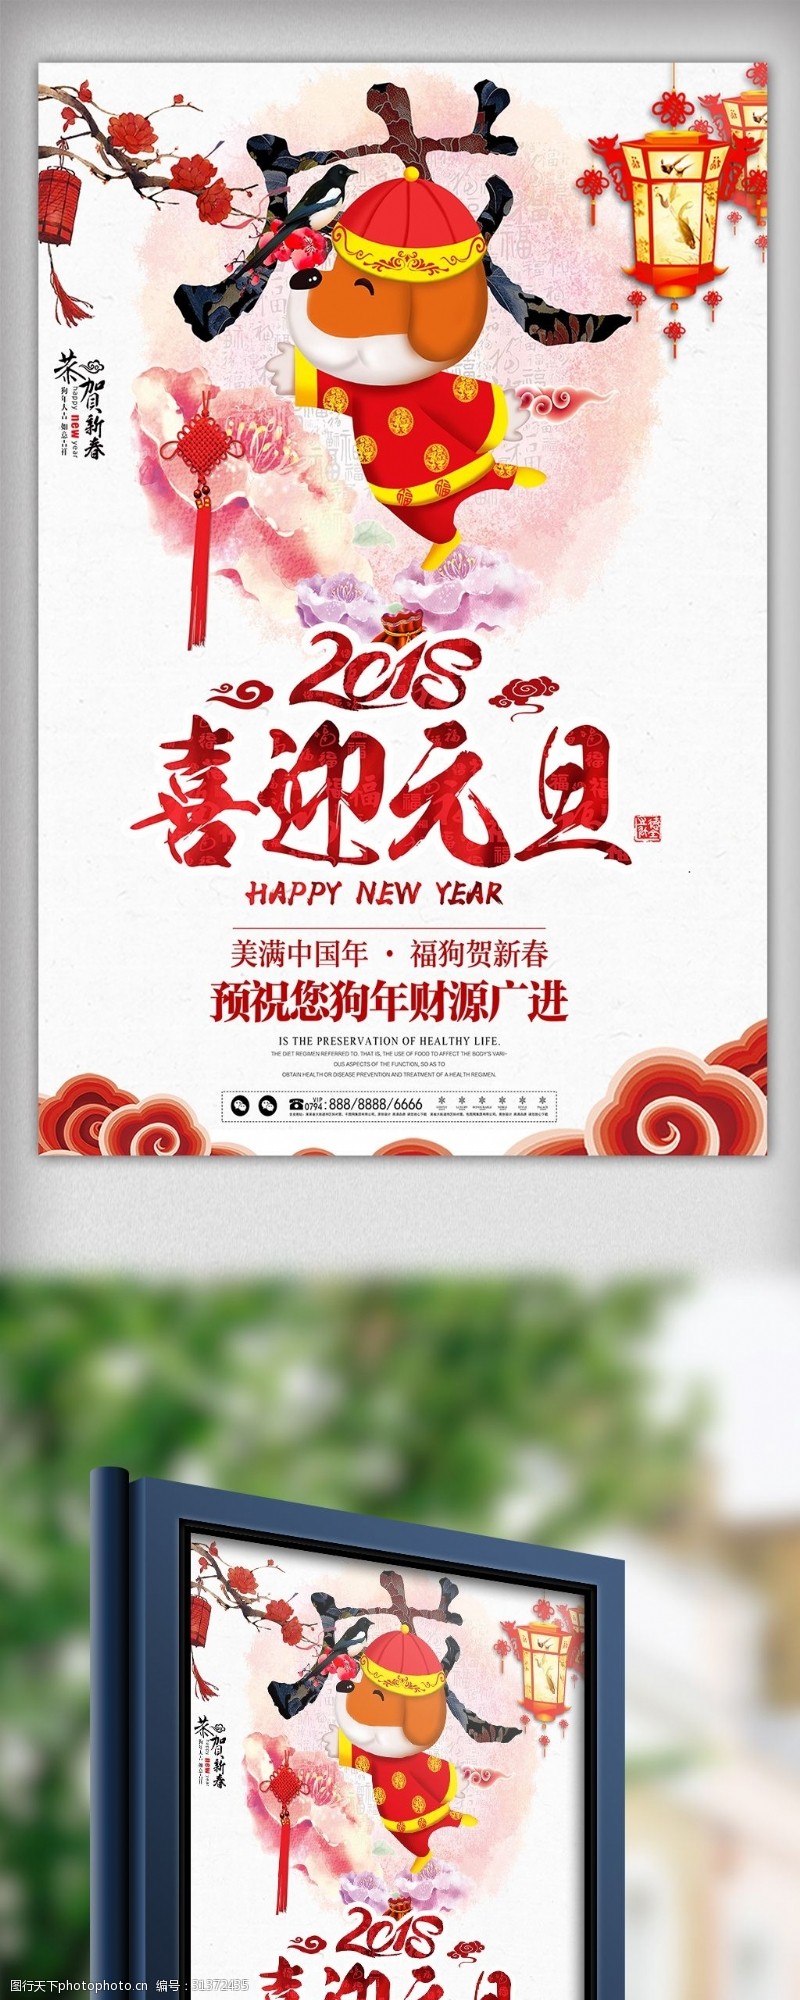 迎新年感恩活动淡雅中国风喜迎元旦海报设计